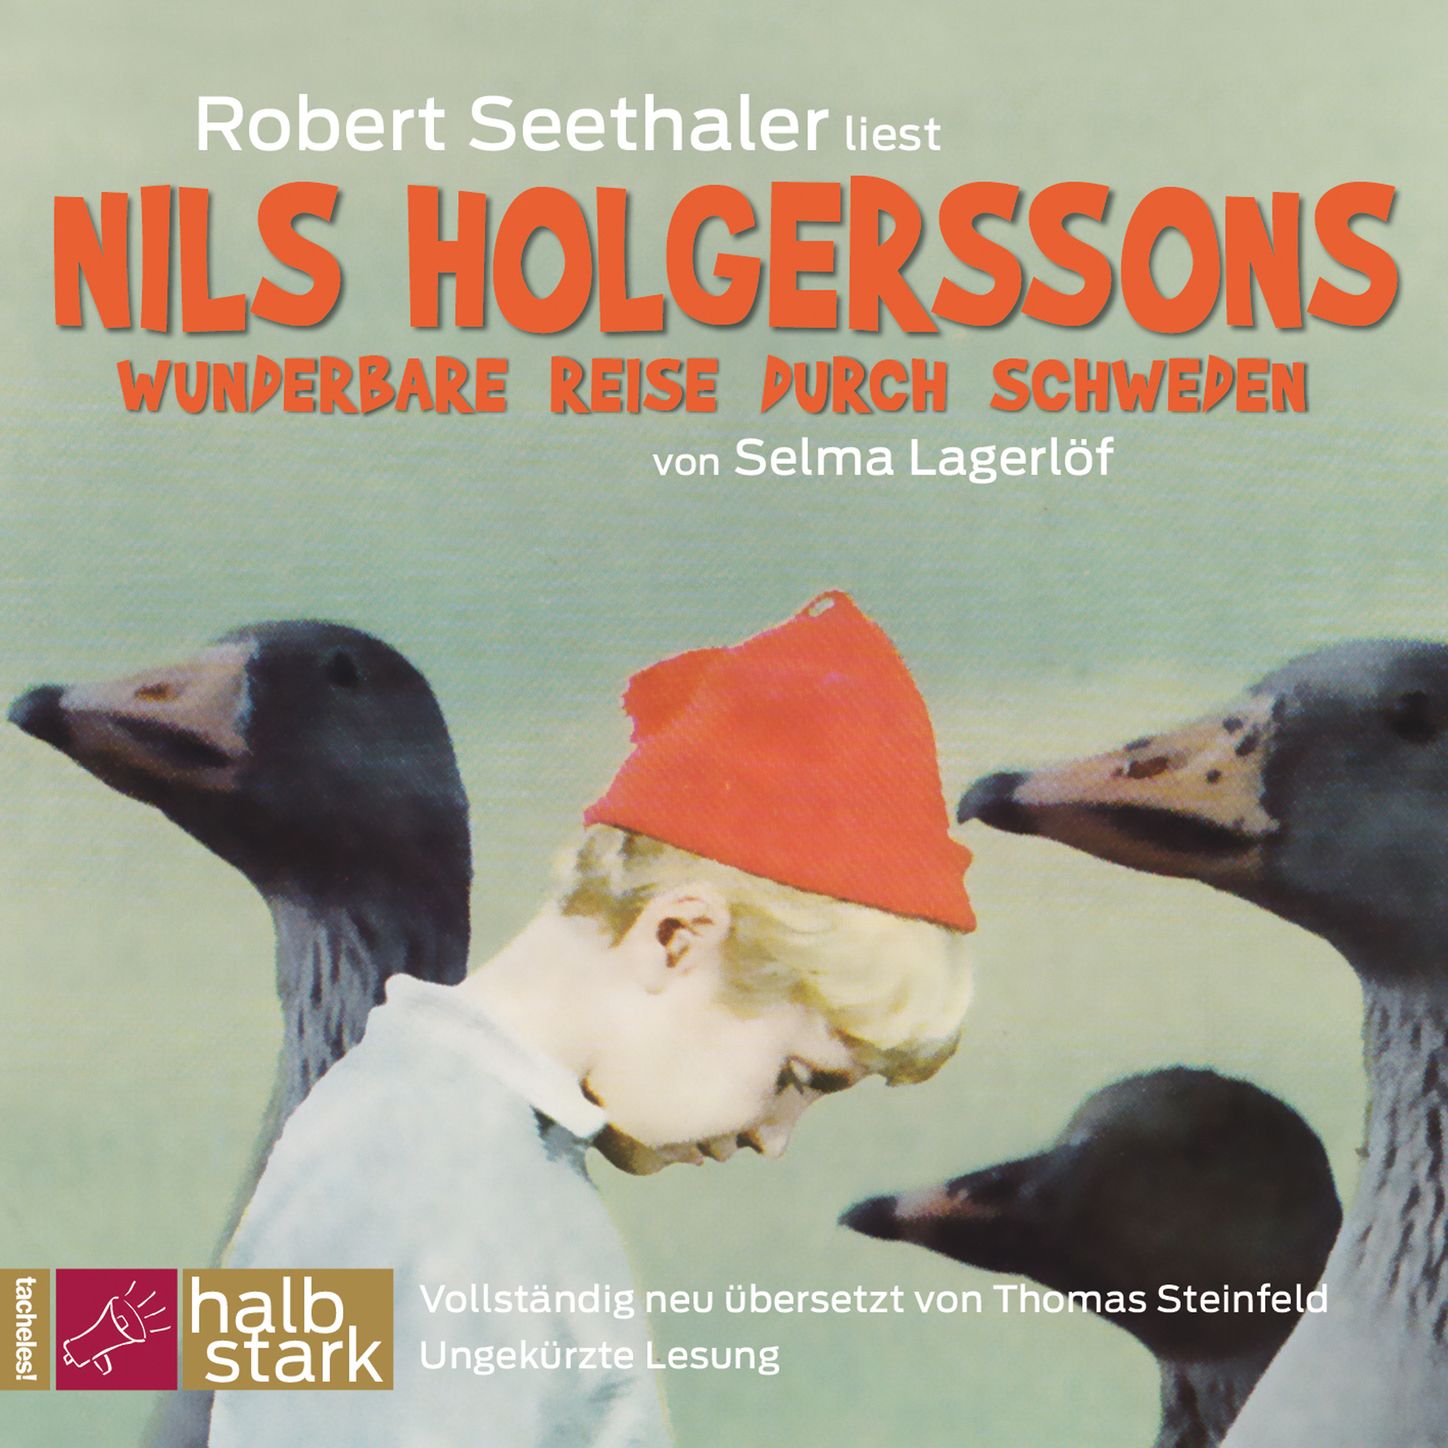 Nils Holgerssons wunderbare Reise durch Schweden, Teil 263